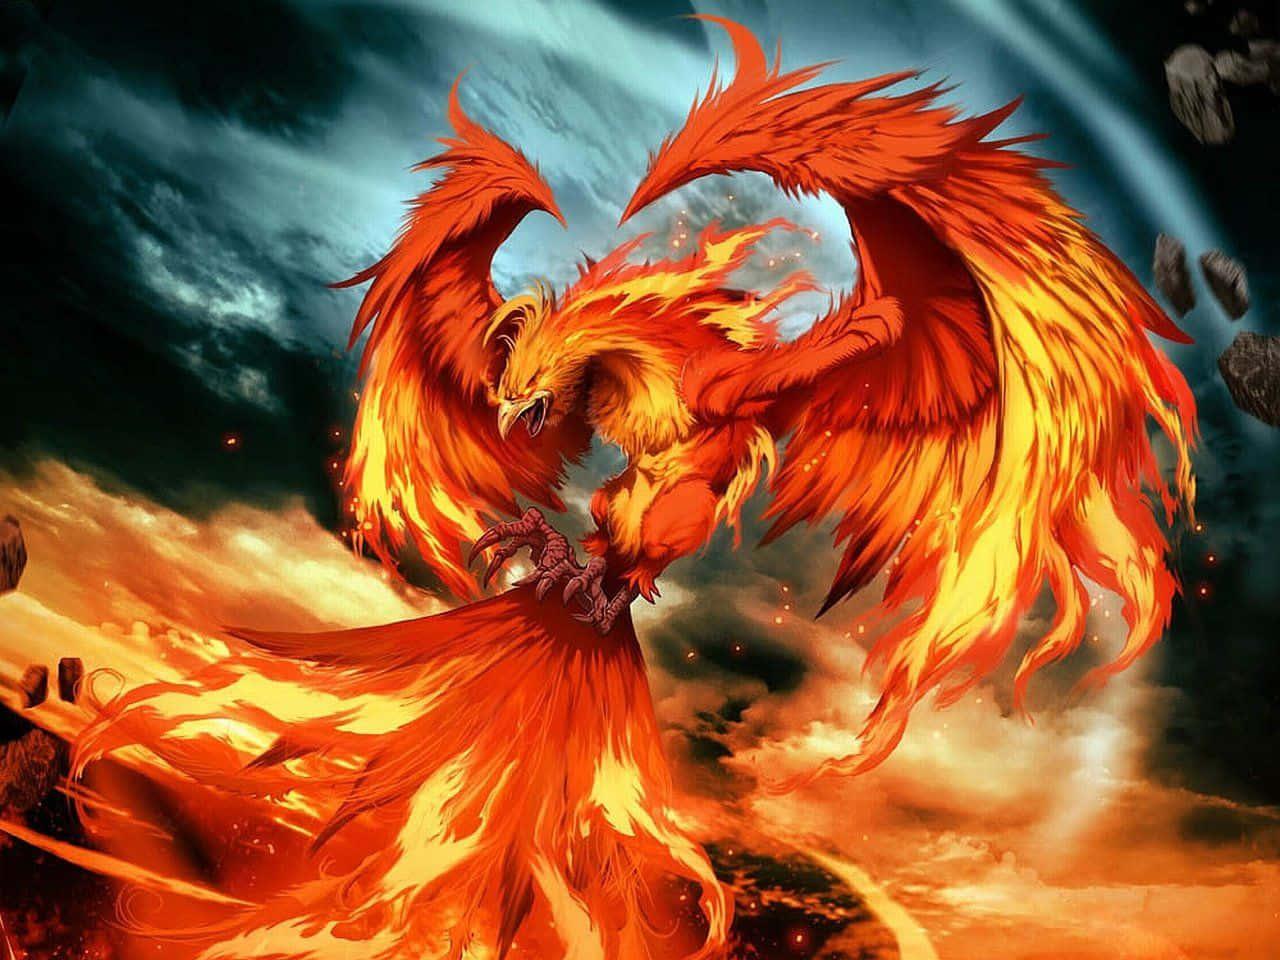 a fiery phoenix flying in the sky